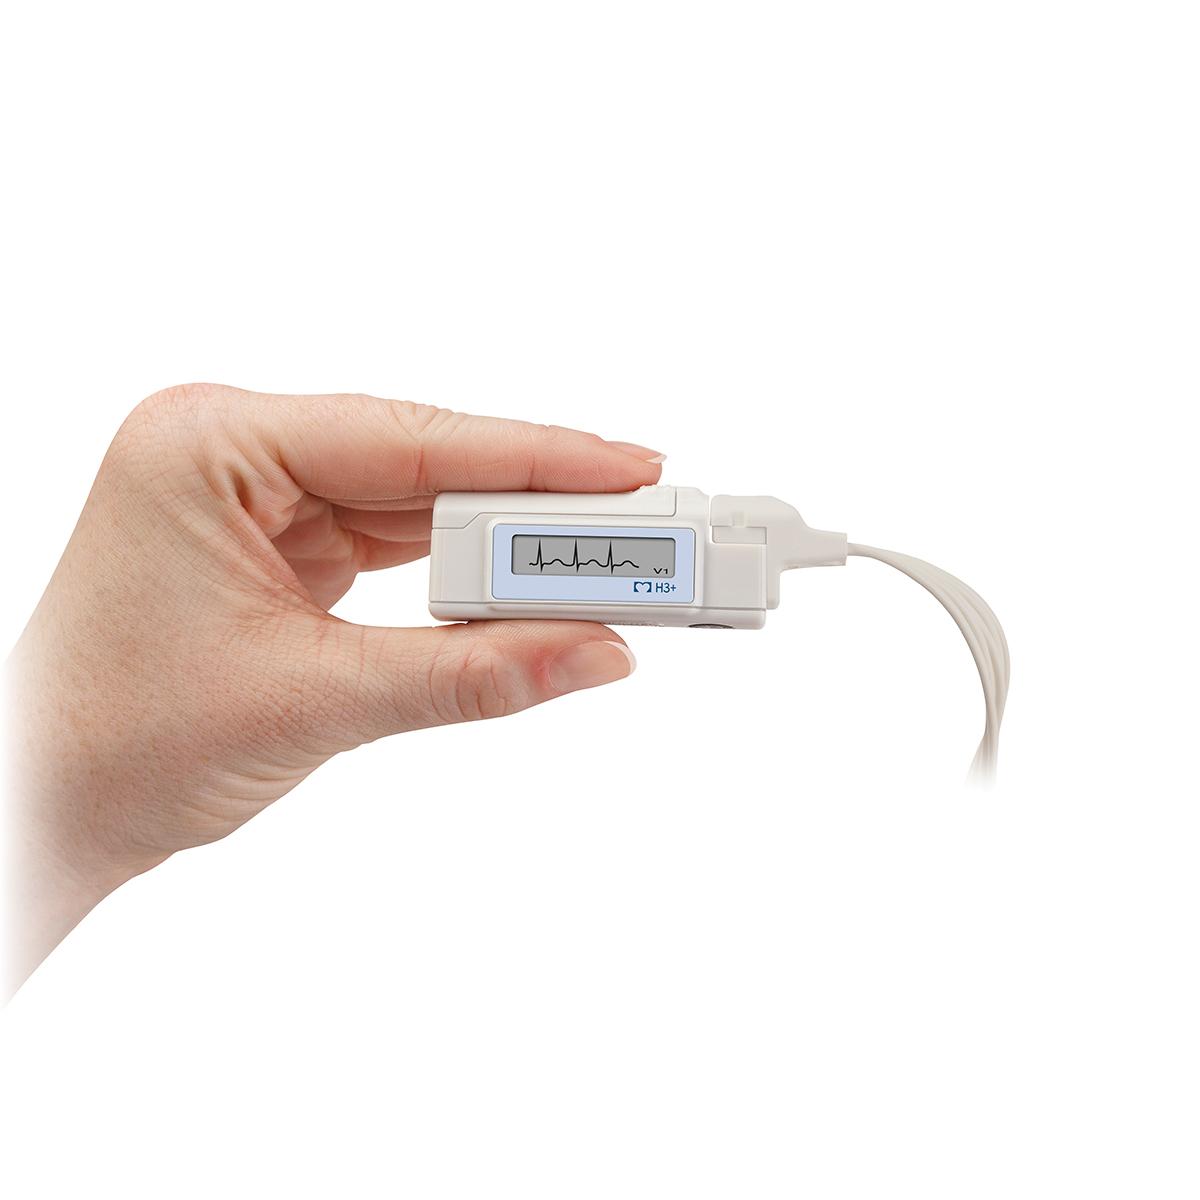 En H3+ Digital Holter-inspelare hålls mellan fingrarna, och kurvor visas på skärmen